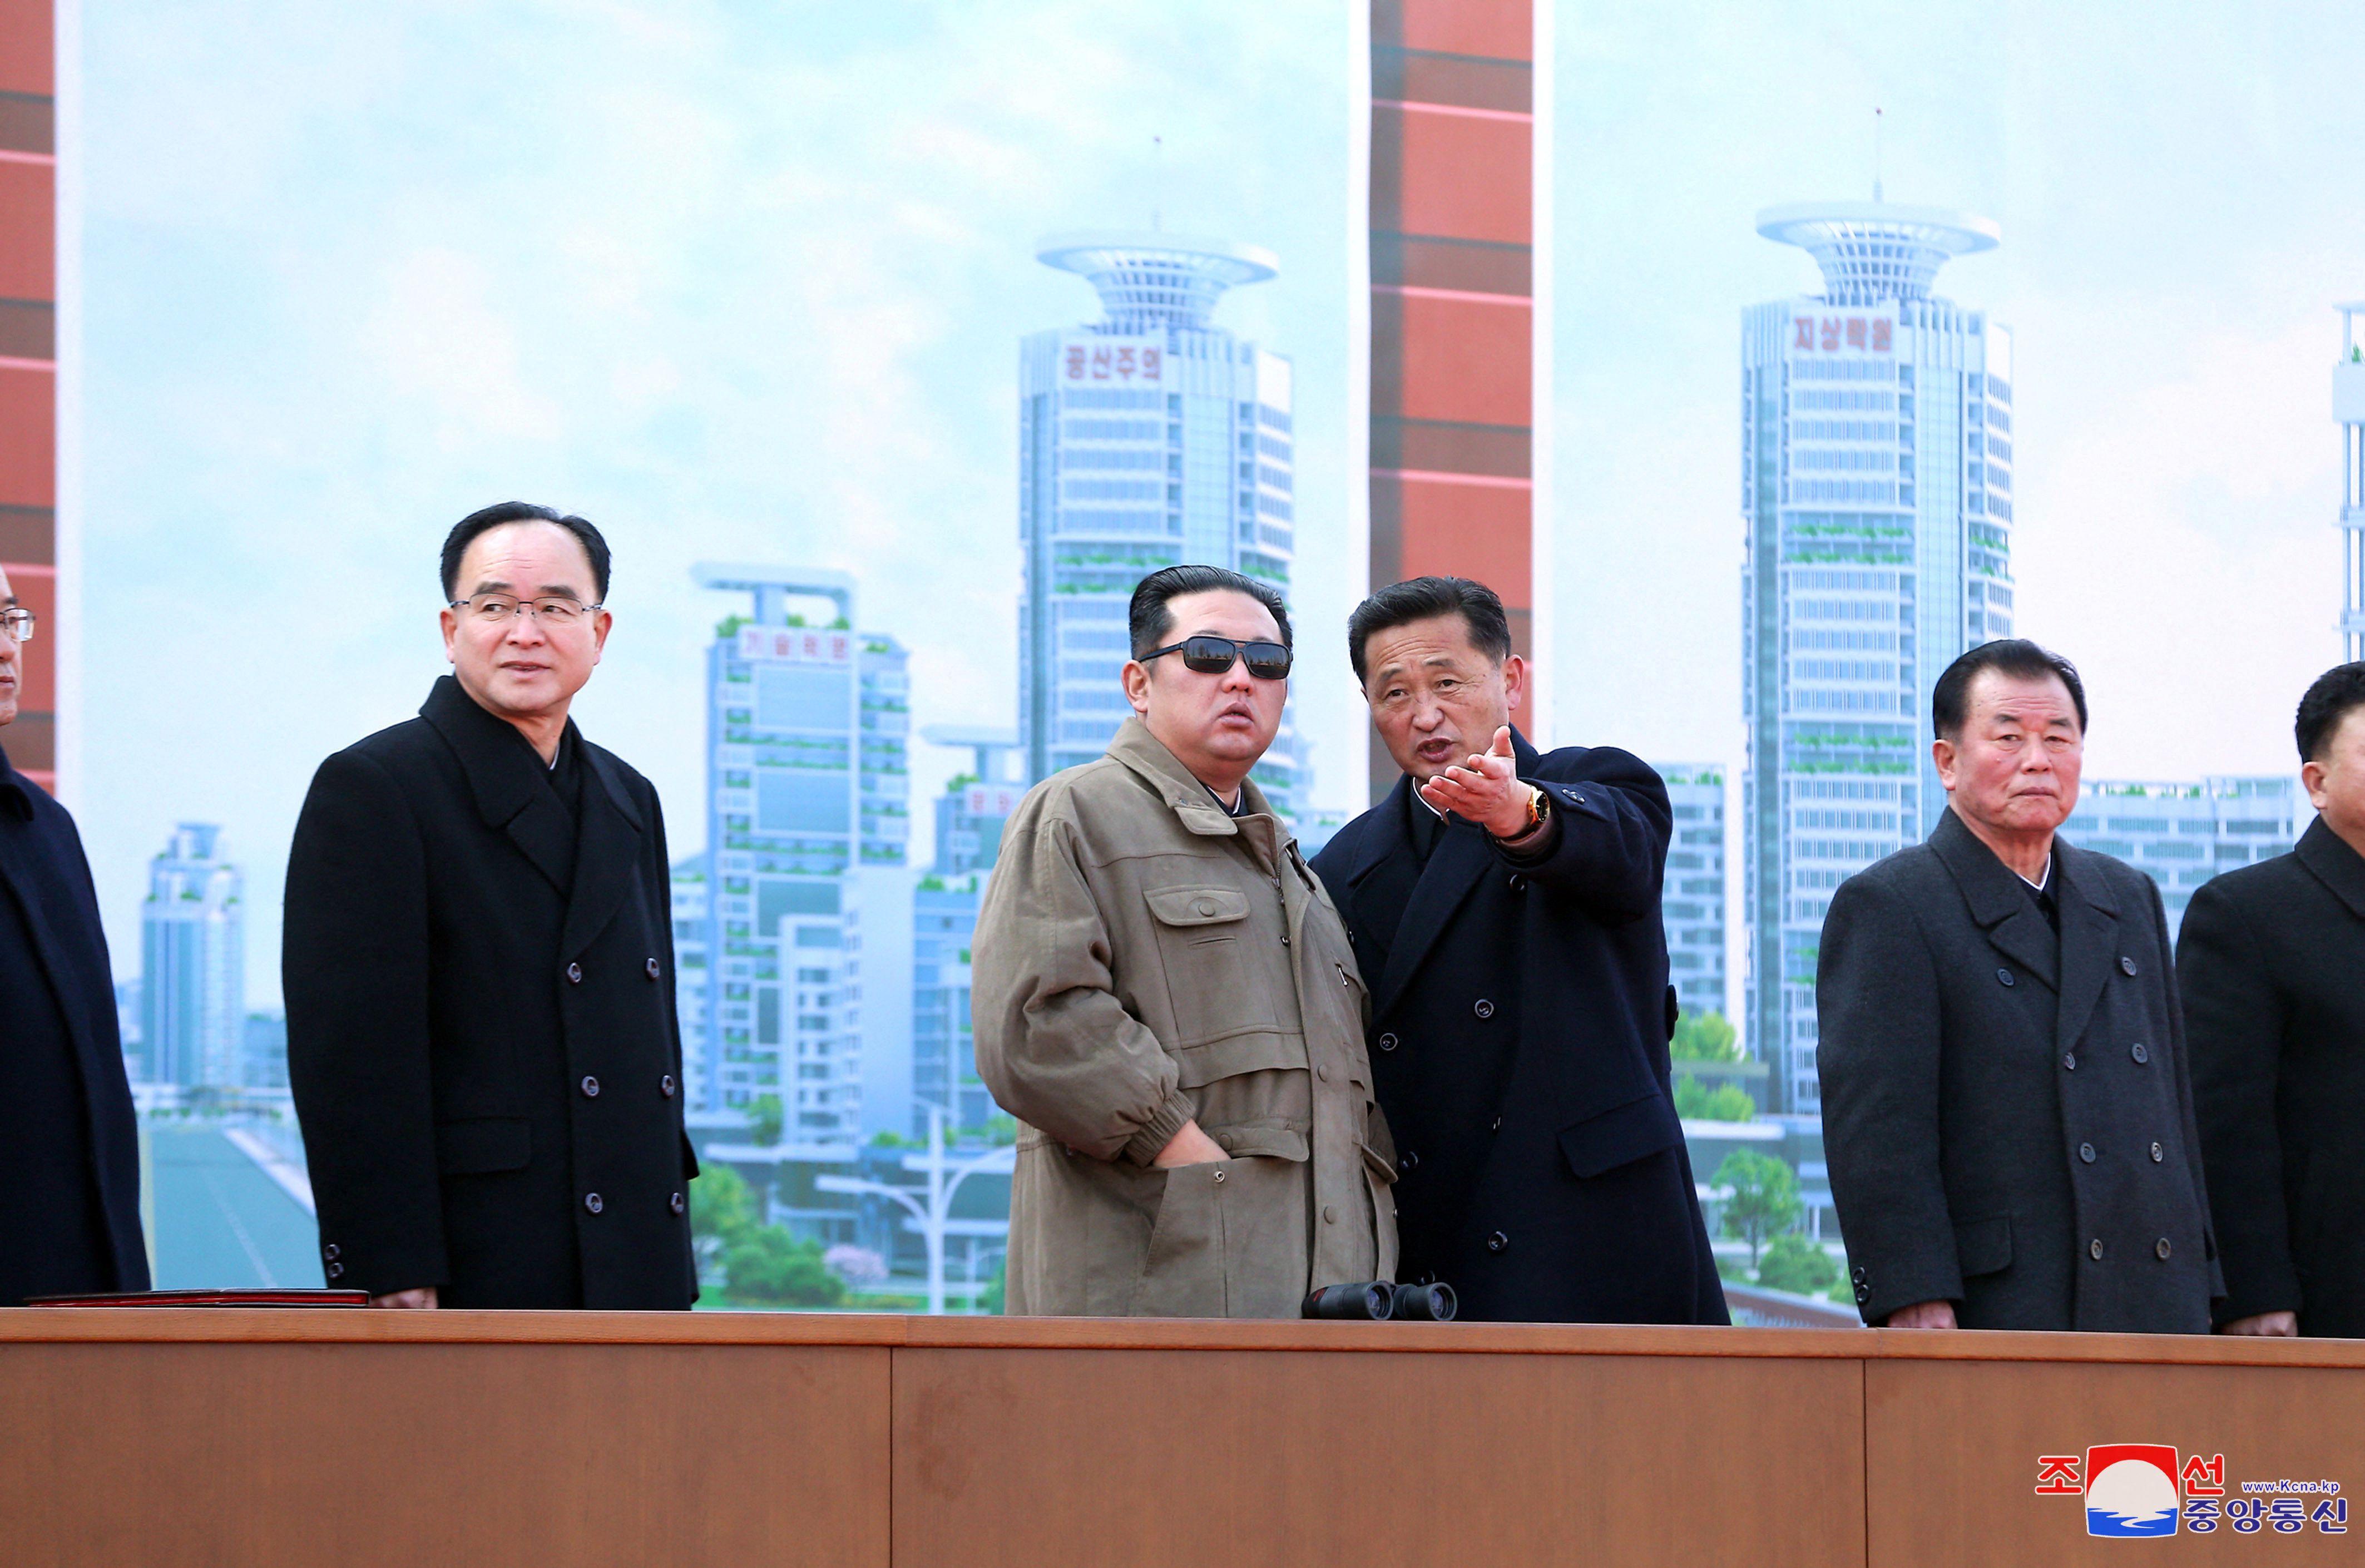 El dictador de Corea del Norte, Kim Jong-un, con miembros del régimen 